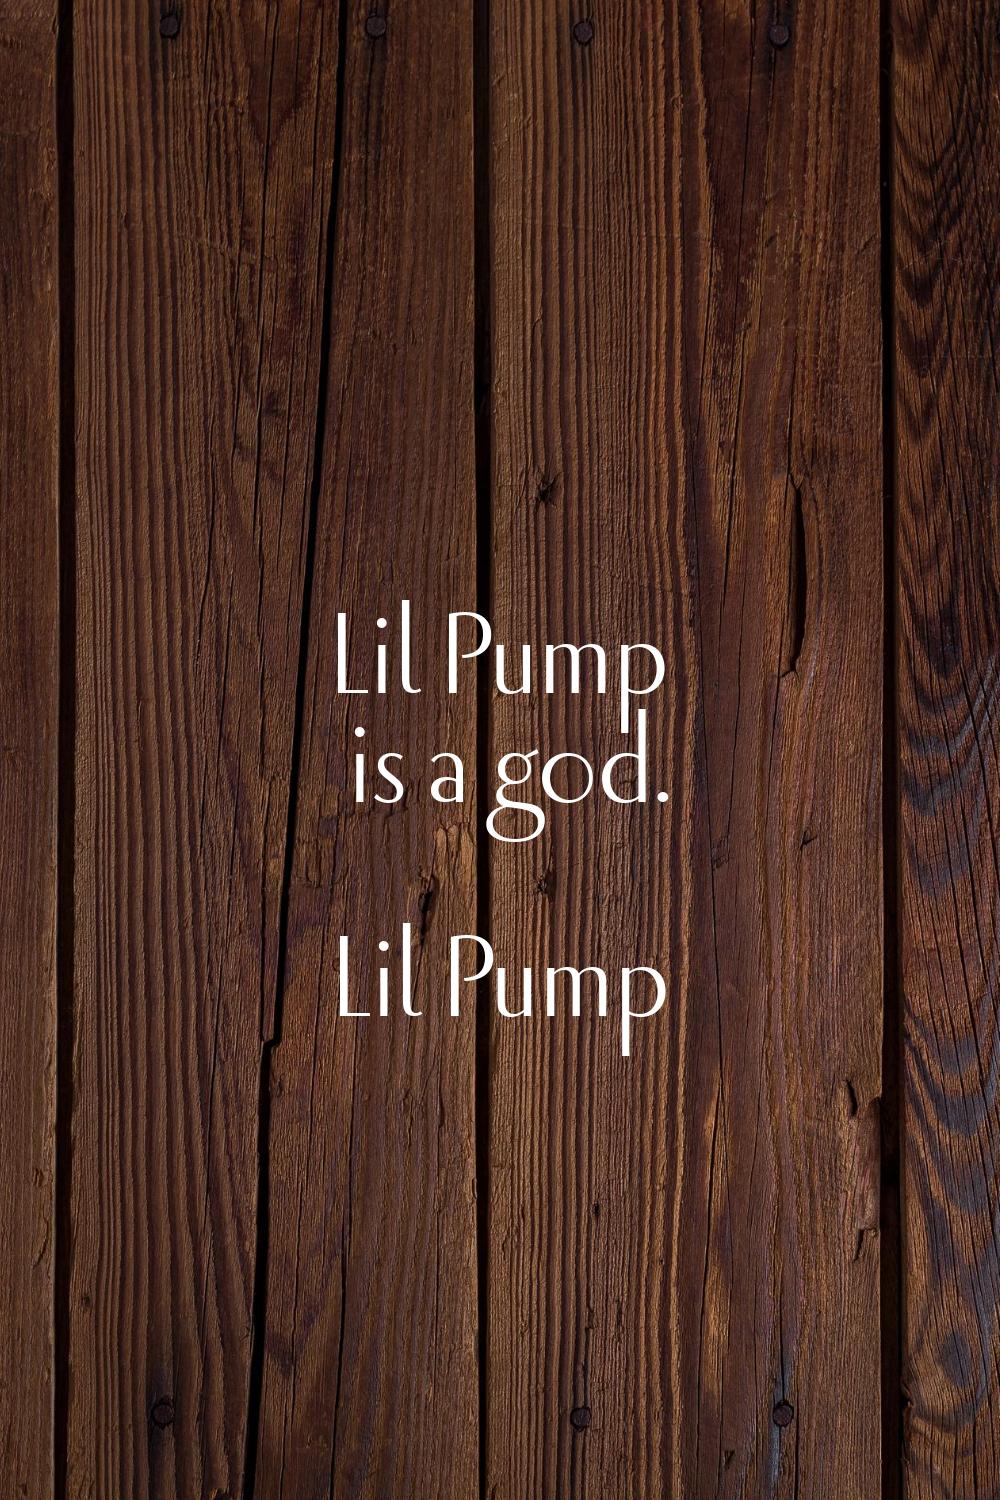 Lil Pump is a god.